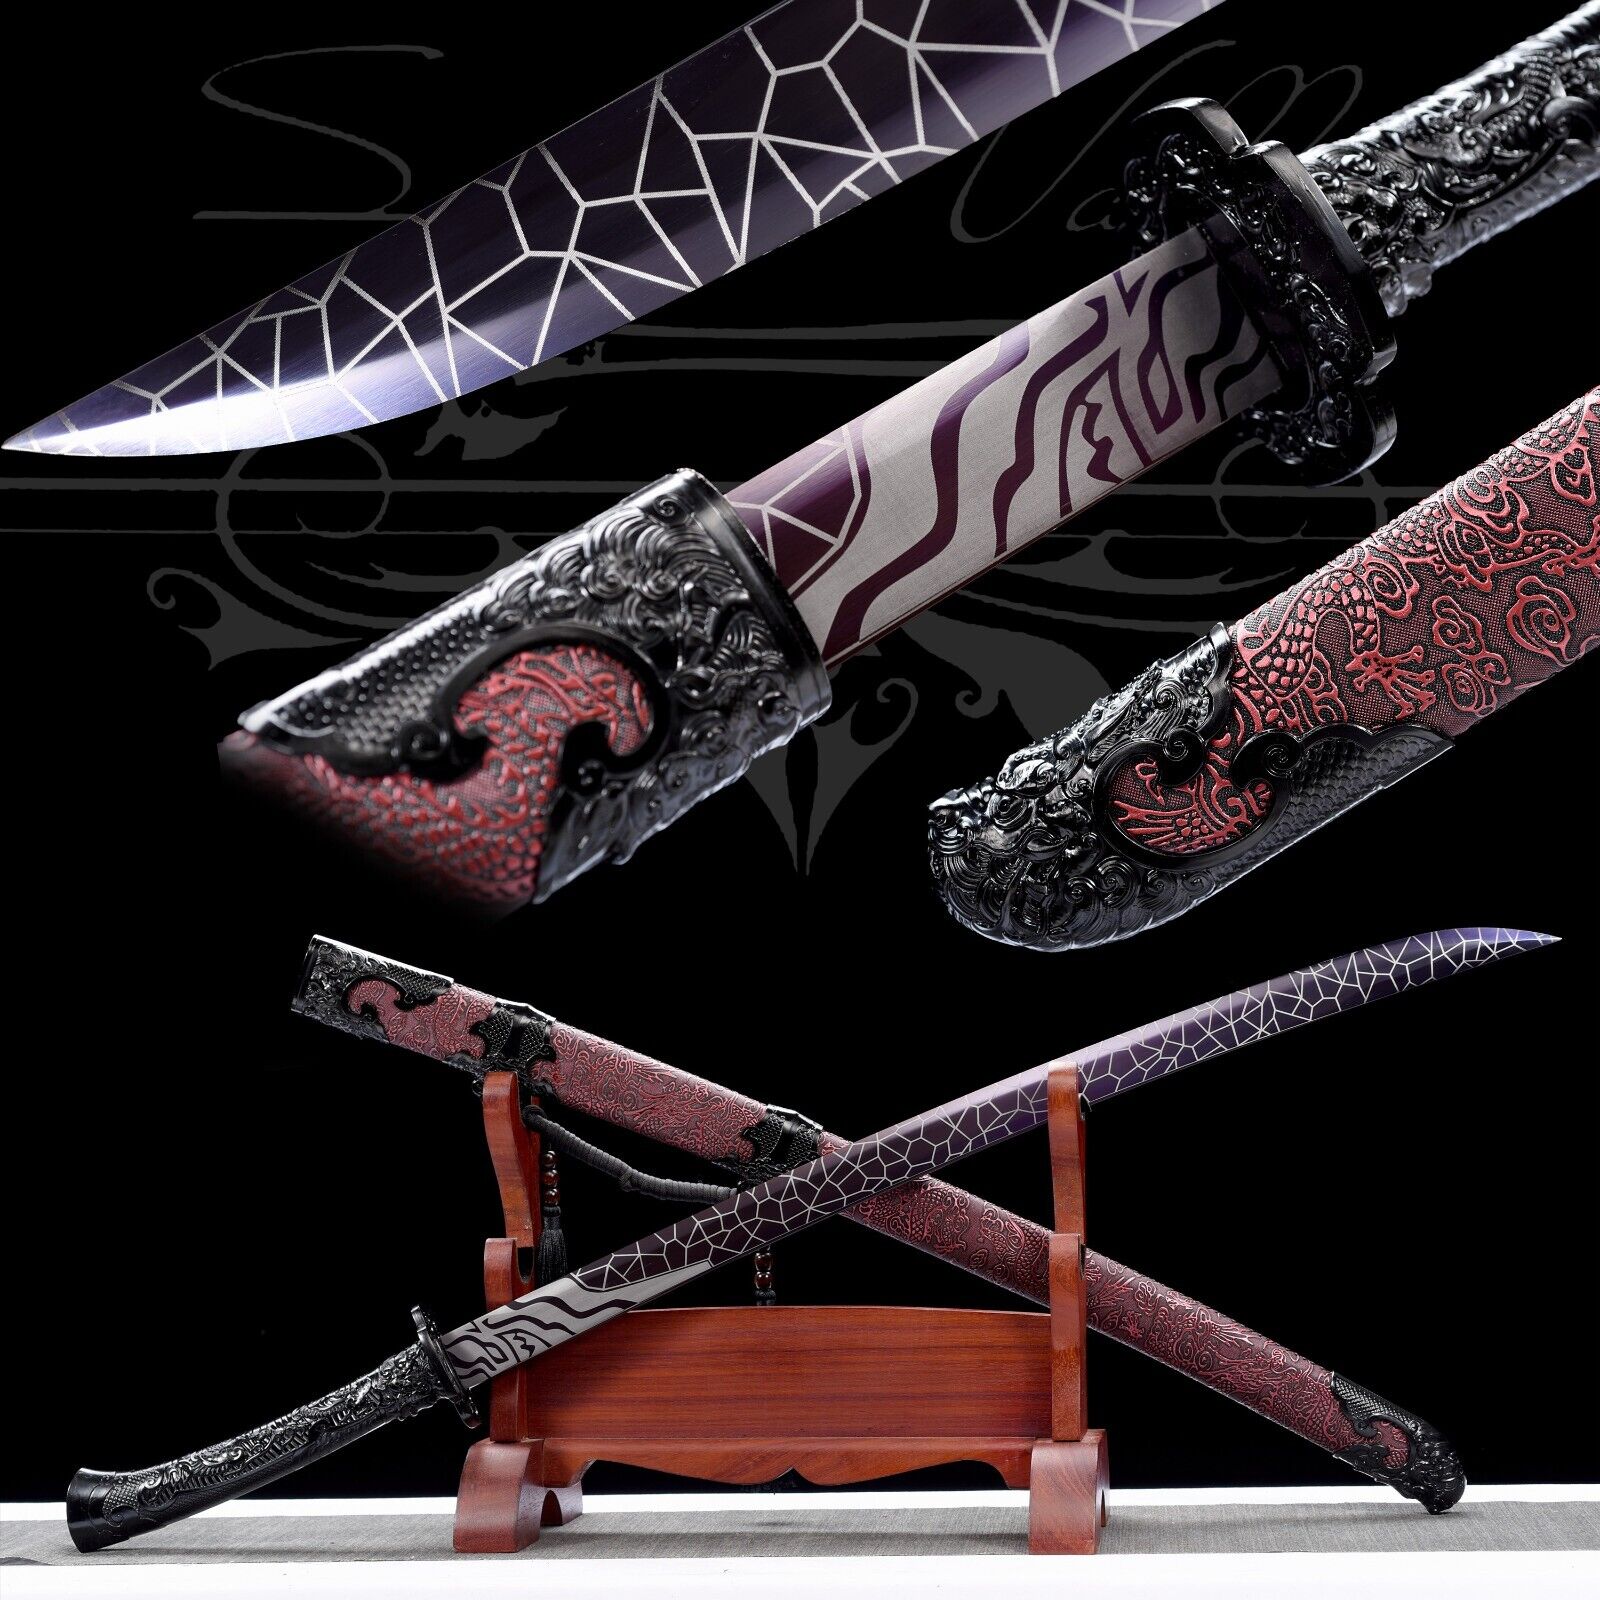 Handmade Katana/Manganese Steel/Collectible/Full Tang/Real/Sharpen Sword